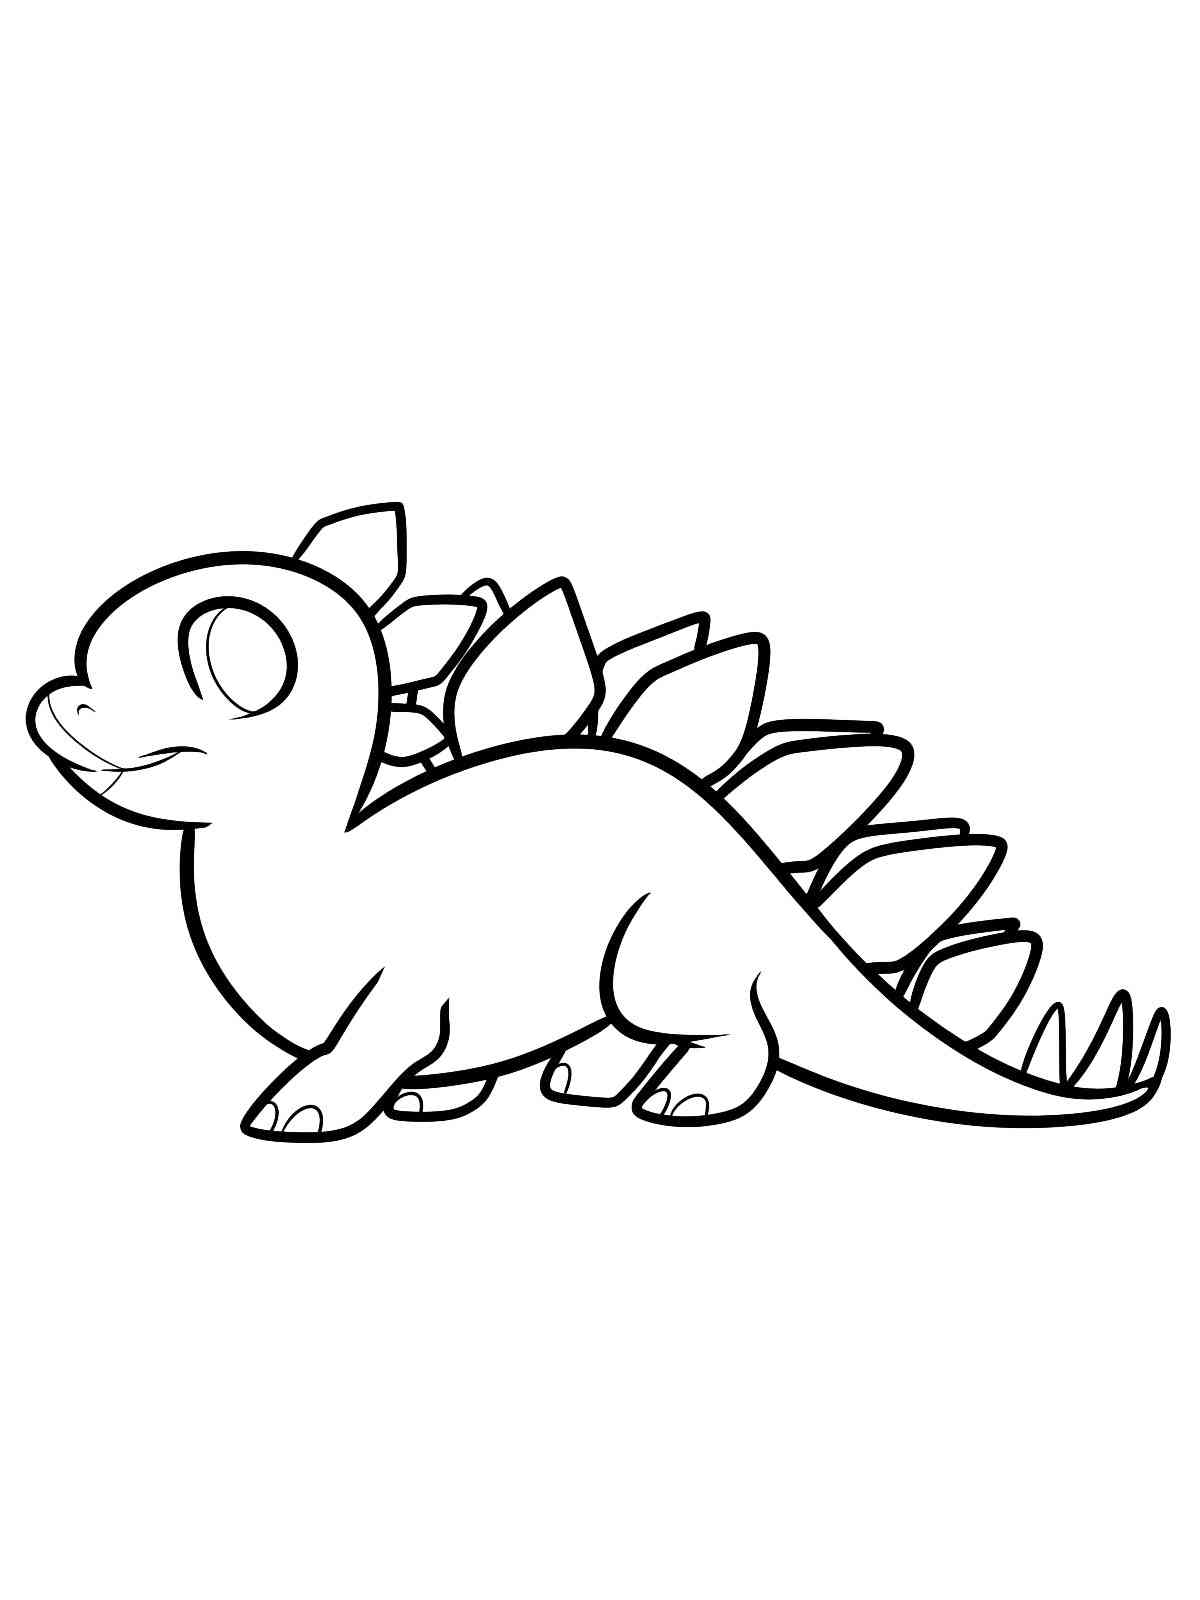 Kawaii Stegosaurus coloring page